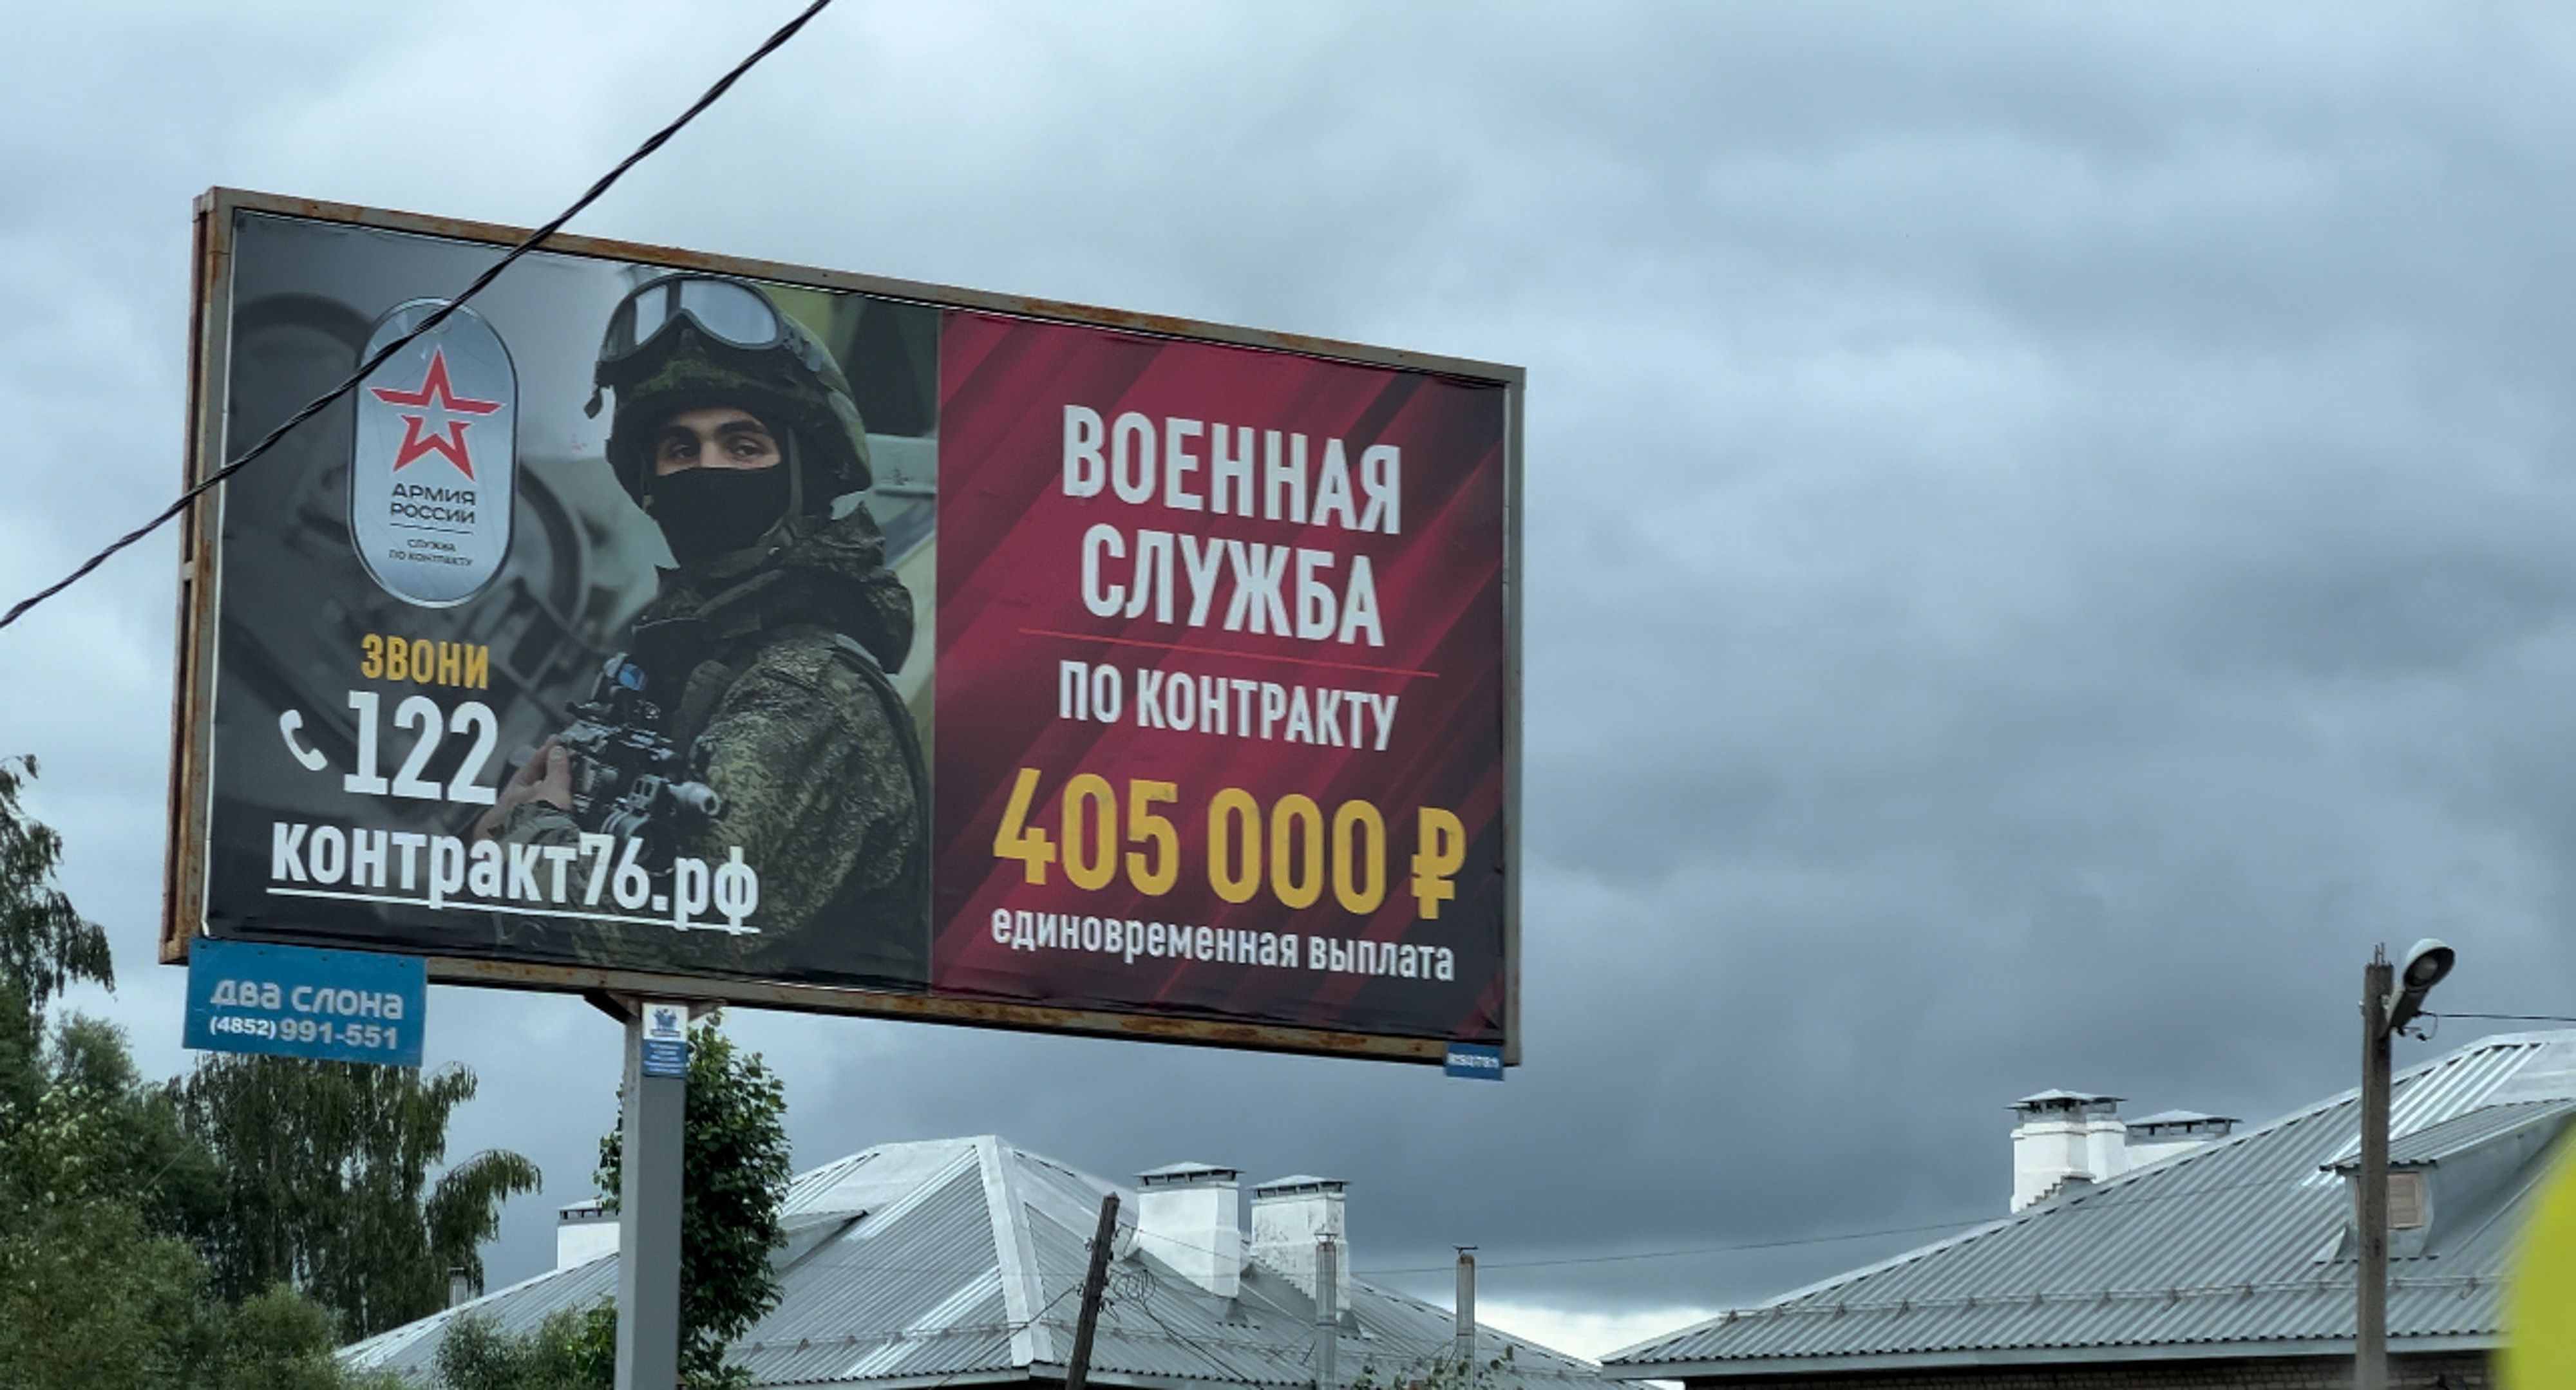 Publicidad oferta de empleo para las fuerzas armadas rusas